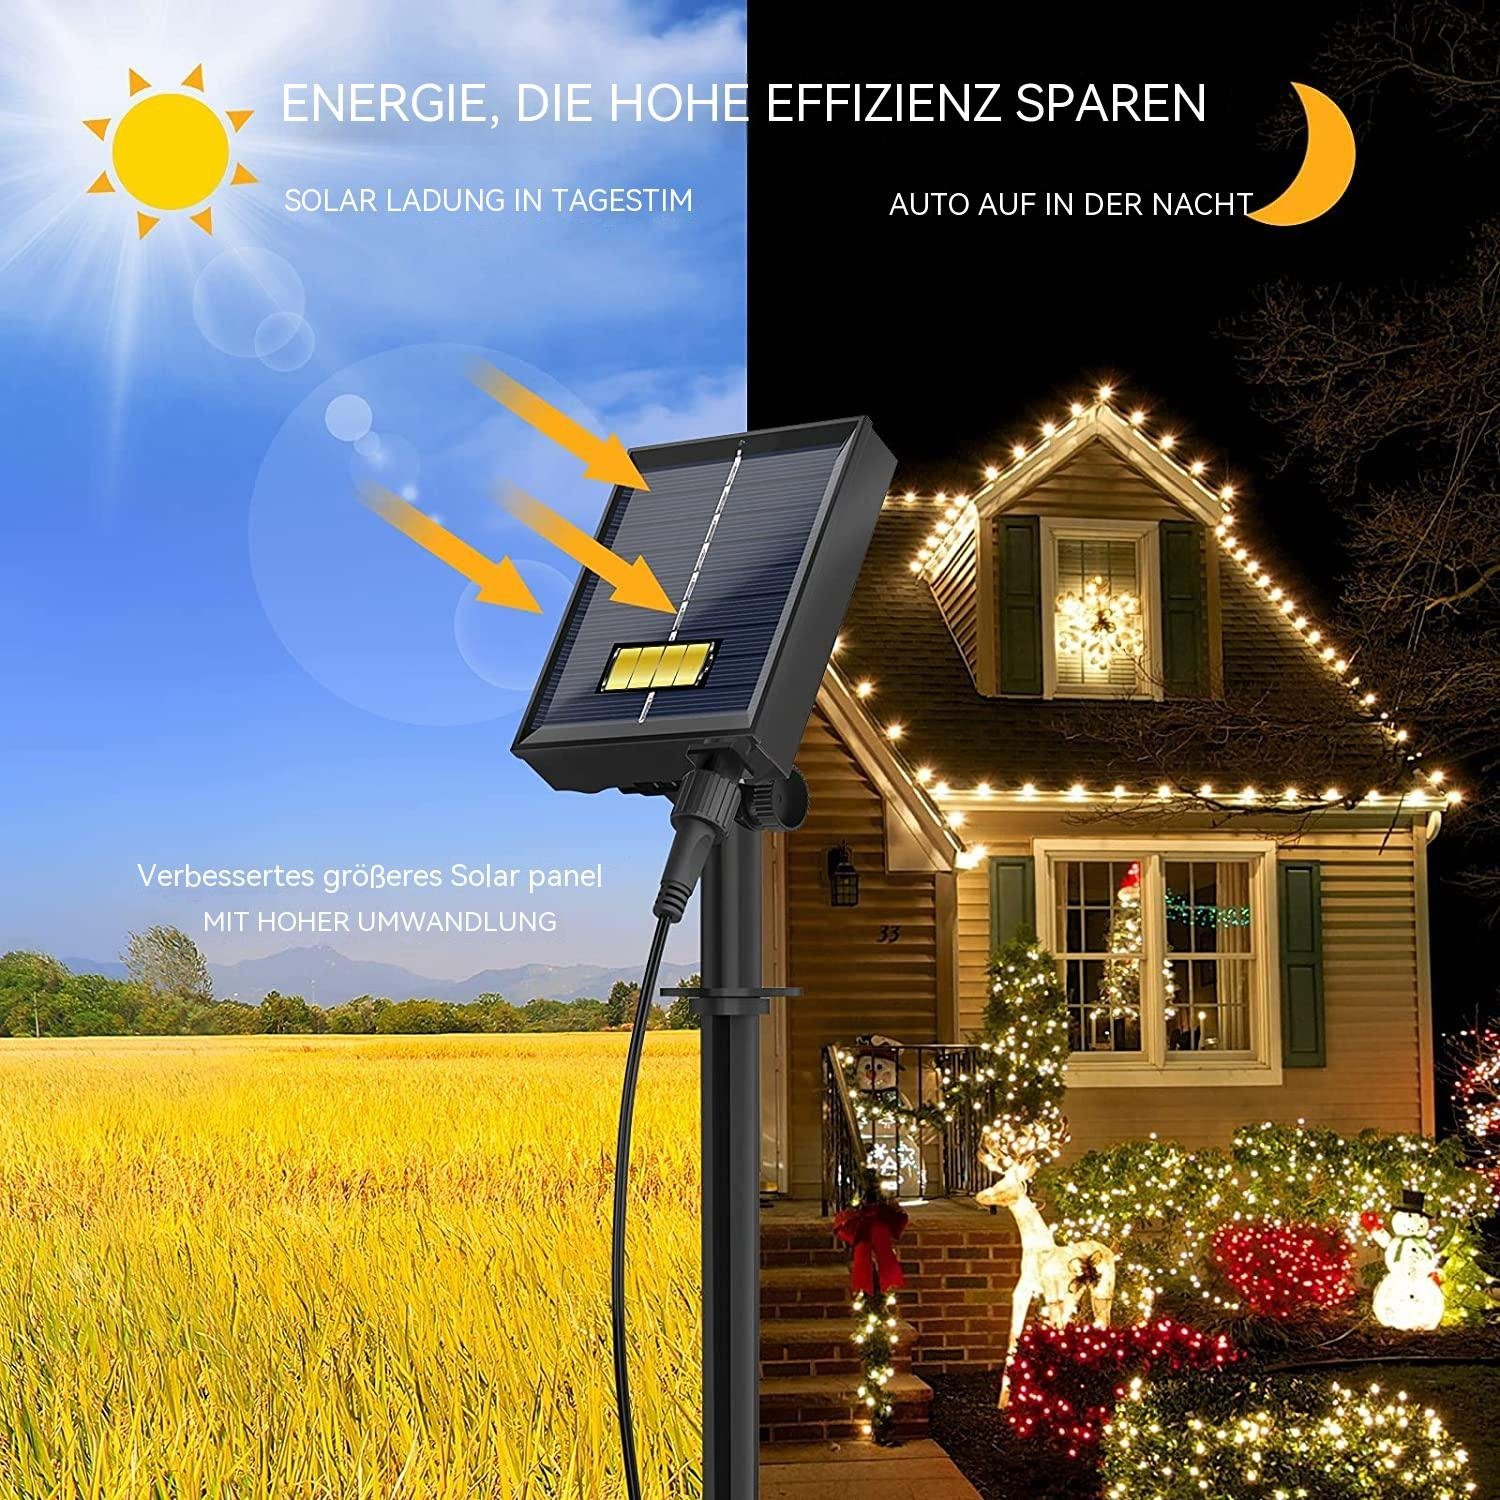 300 LED Lichterkette Timer Solar GelldG 30M LED-Lichterkette Modi LED Fernbedienung 8